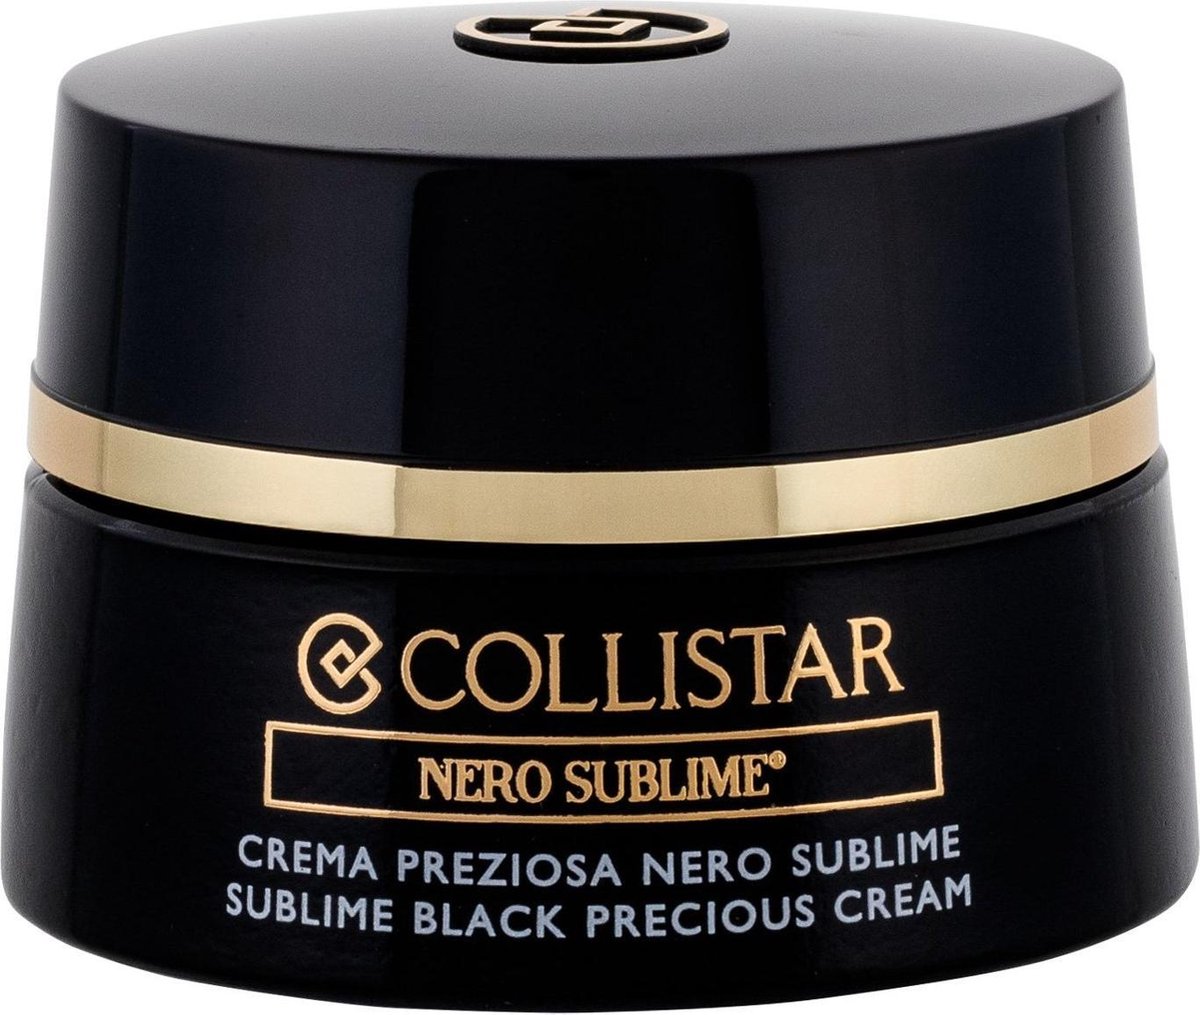 Collistar Nero Sublime Black Precious Cream Gezichtscrème - 50 ml bol.com